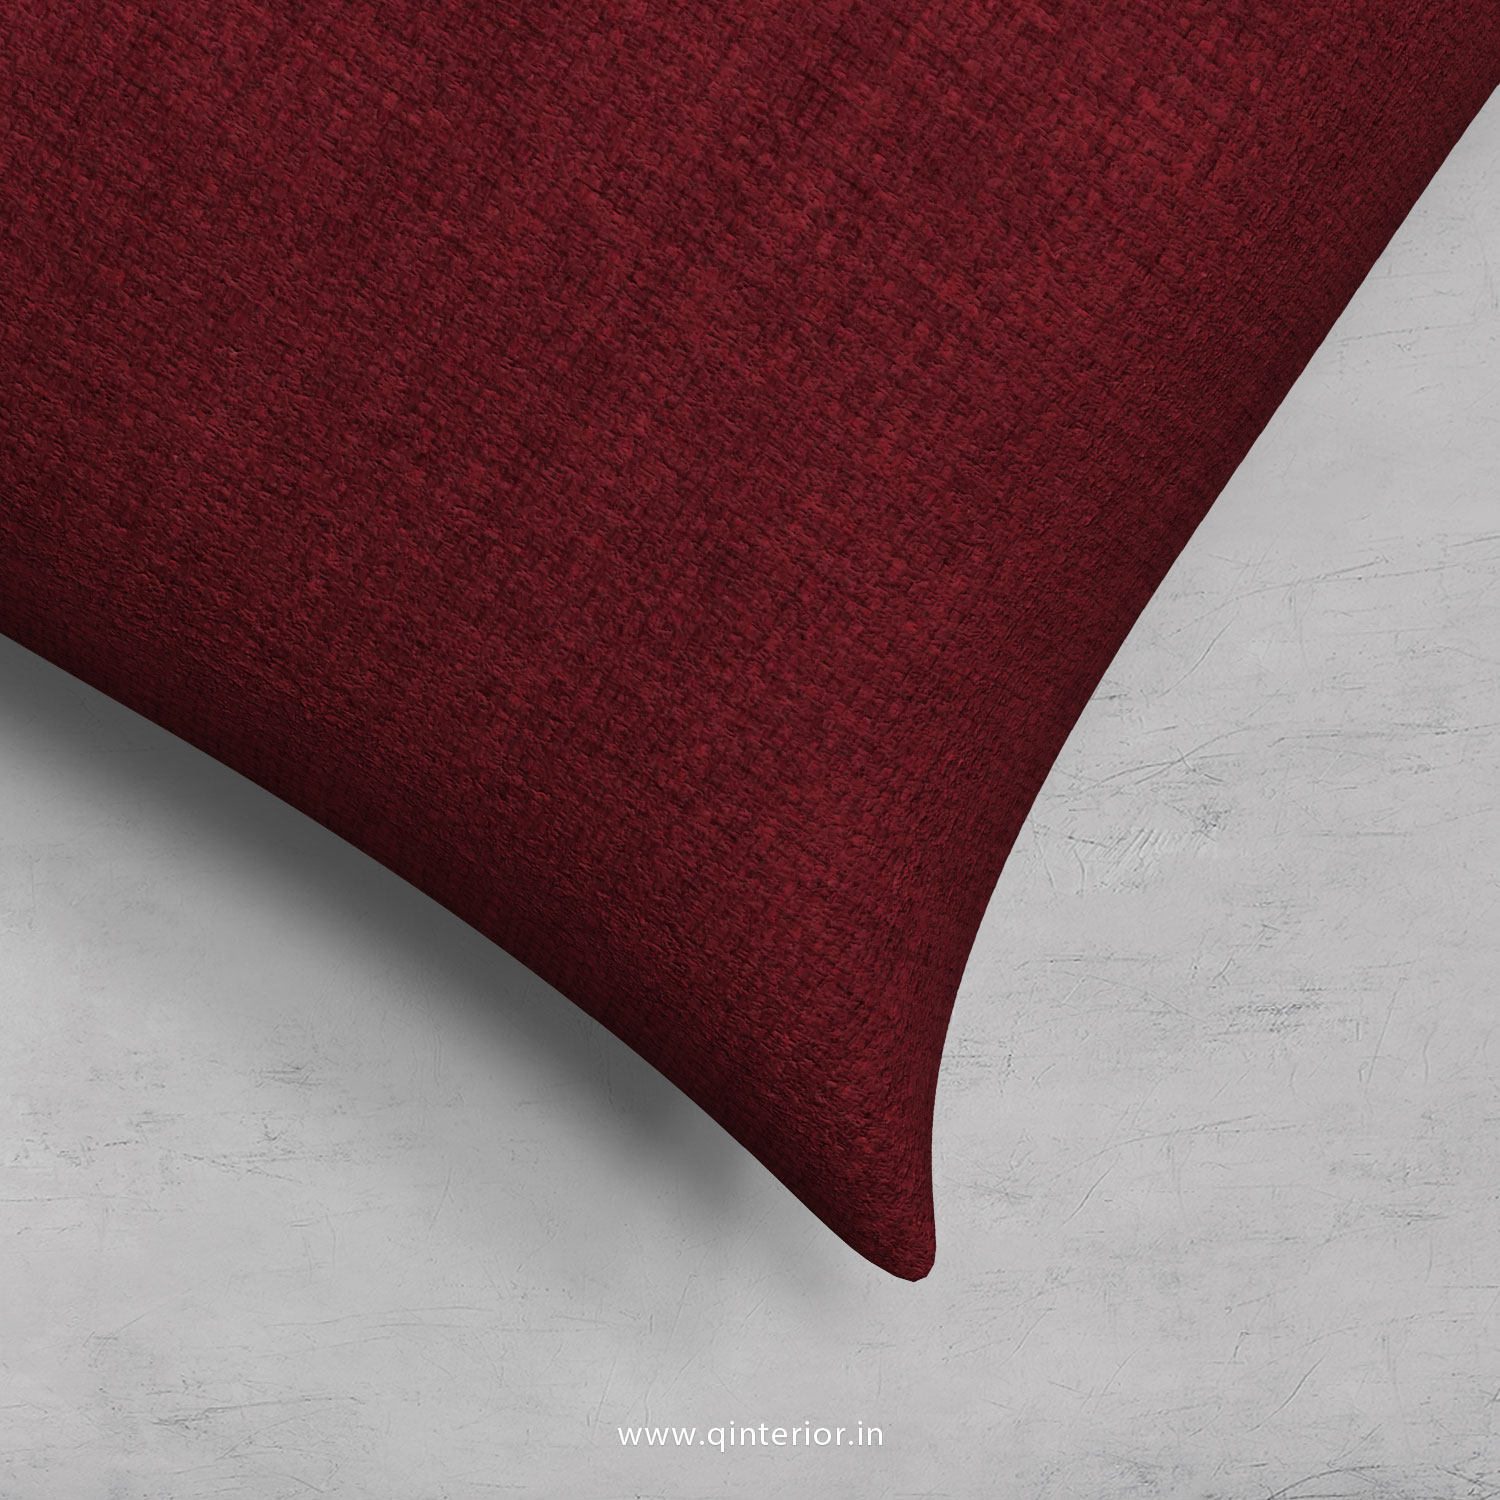 Cushion With Cushion Cover in Cotton Plain- CUS002 CP24